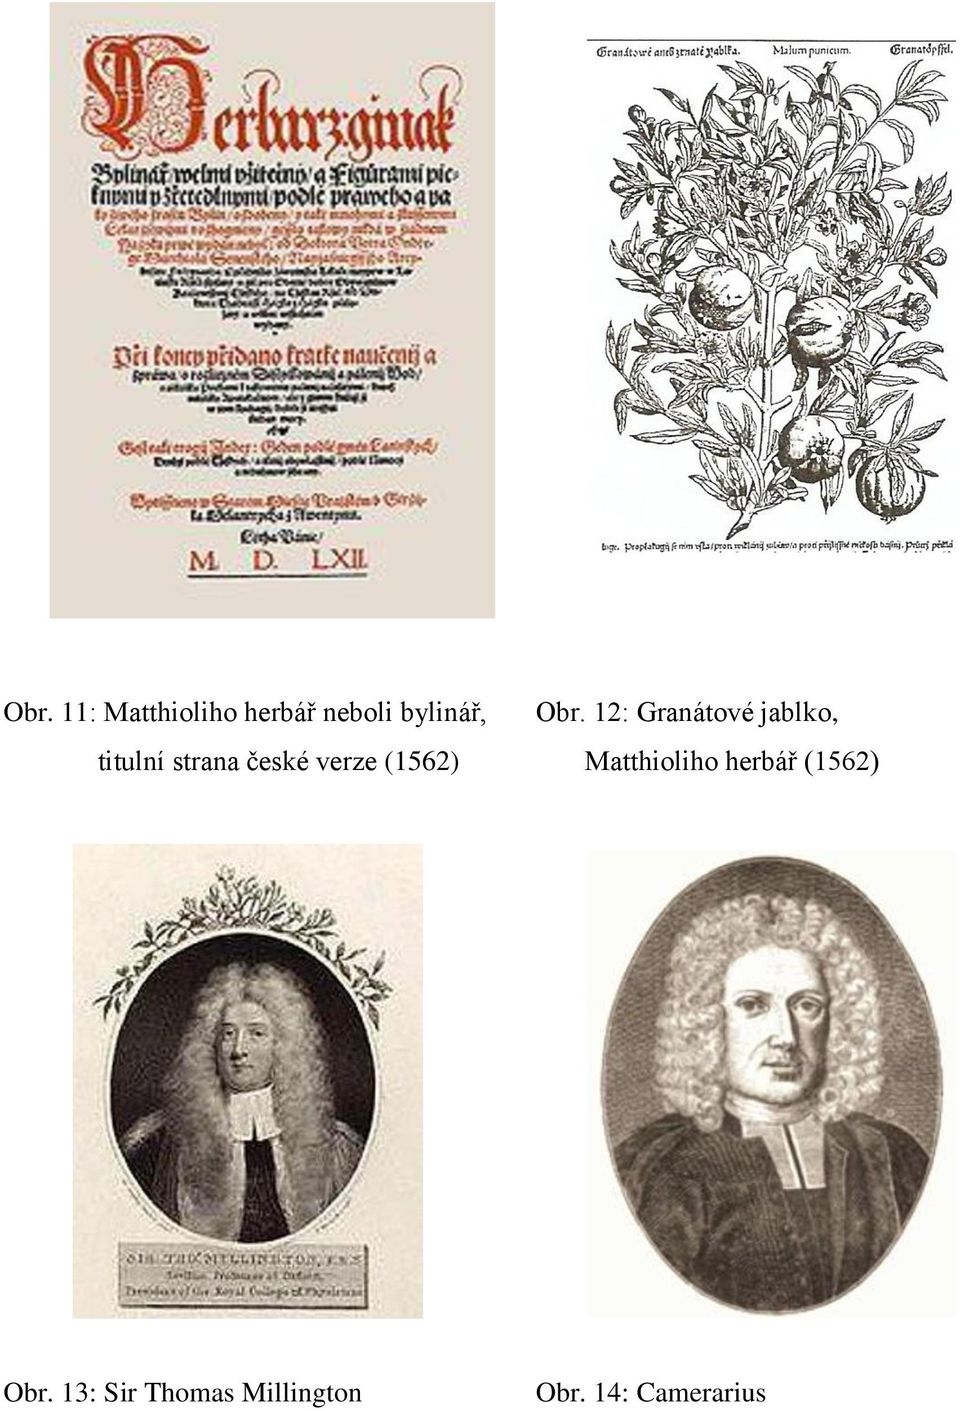 české verze (1562) Matthioliho herbář (1562)